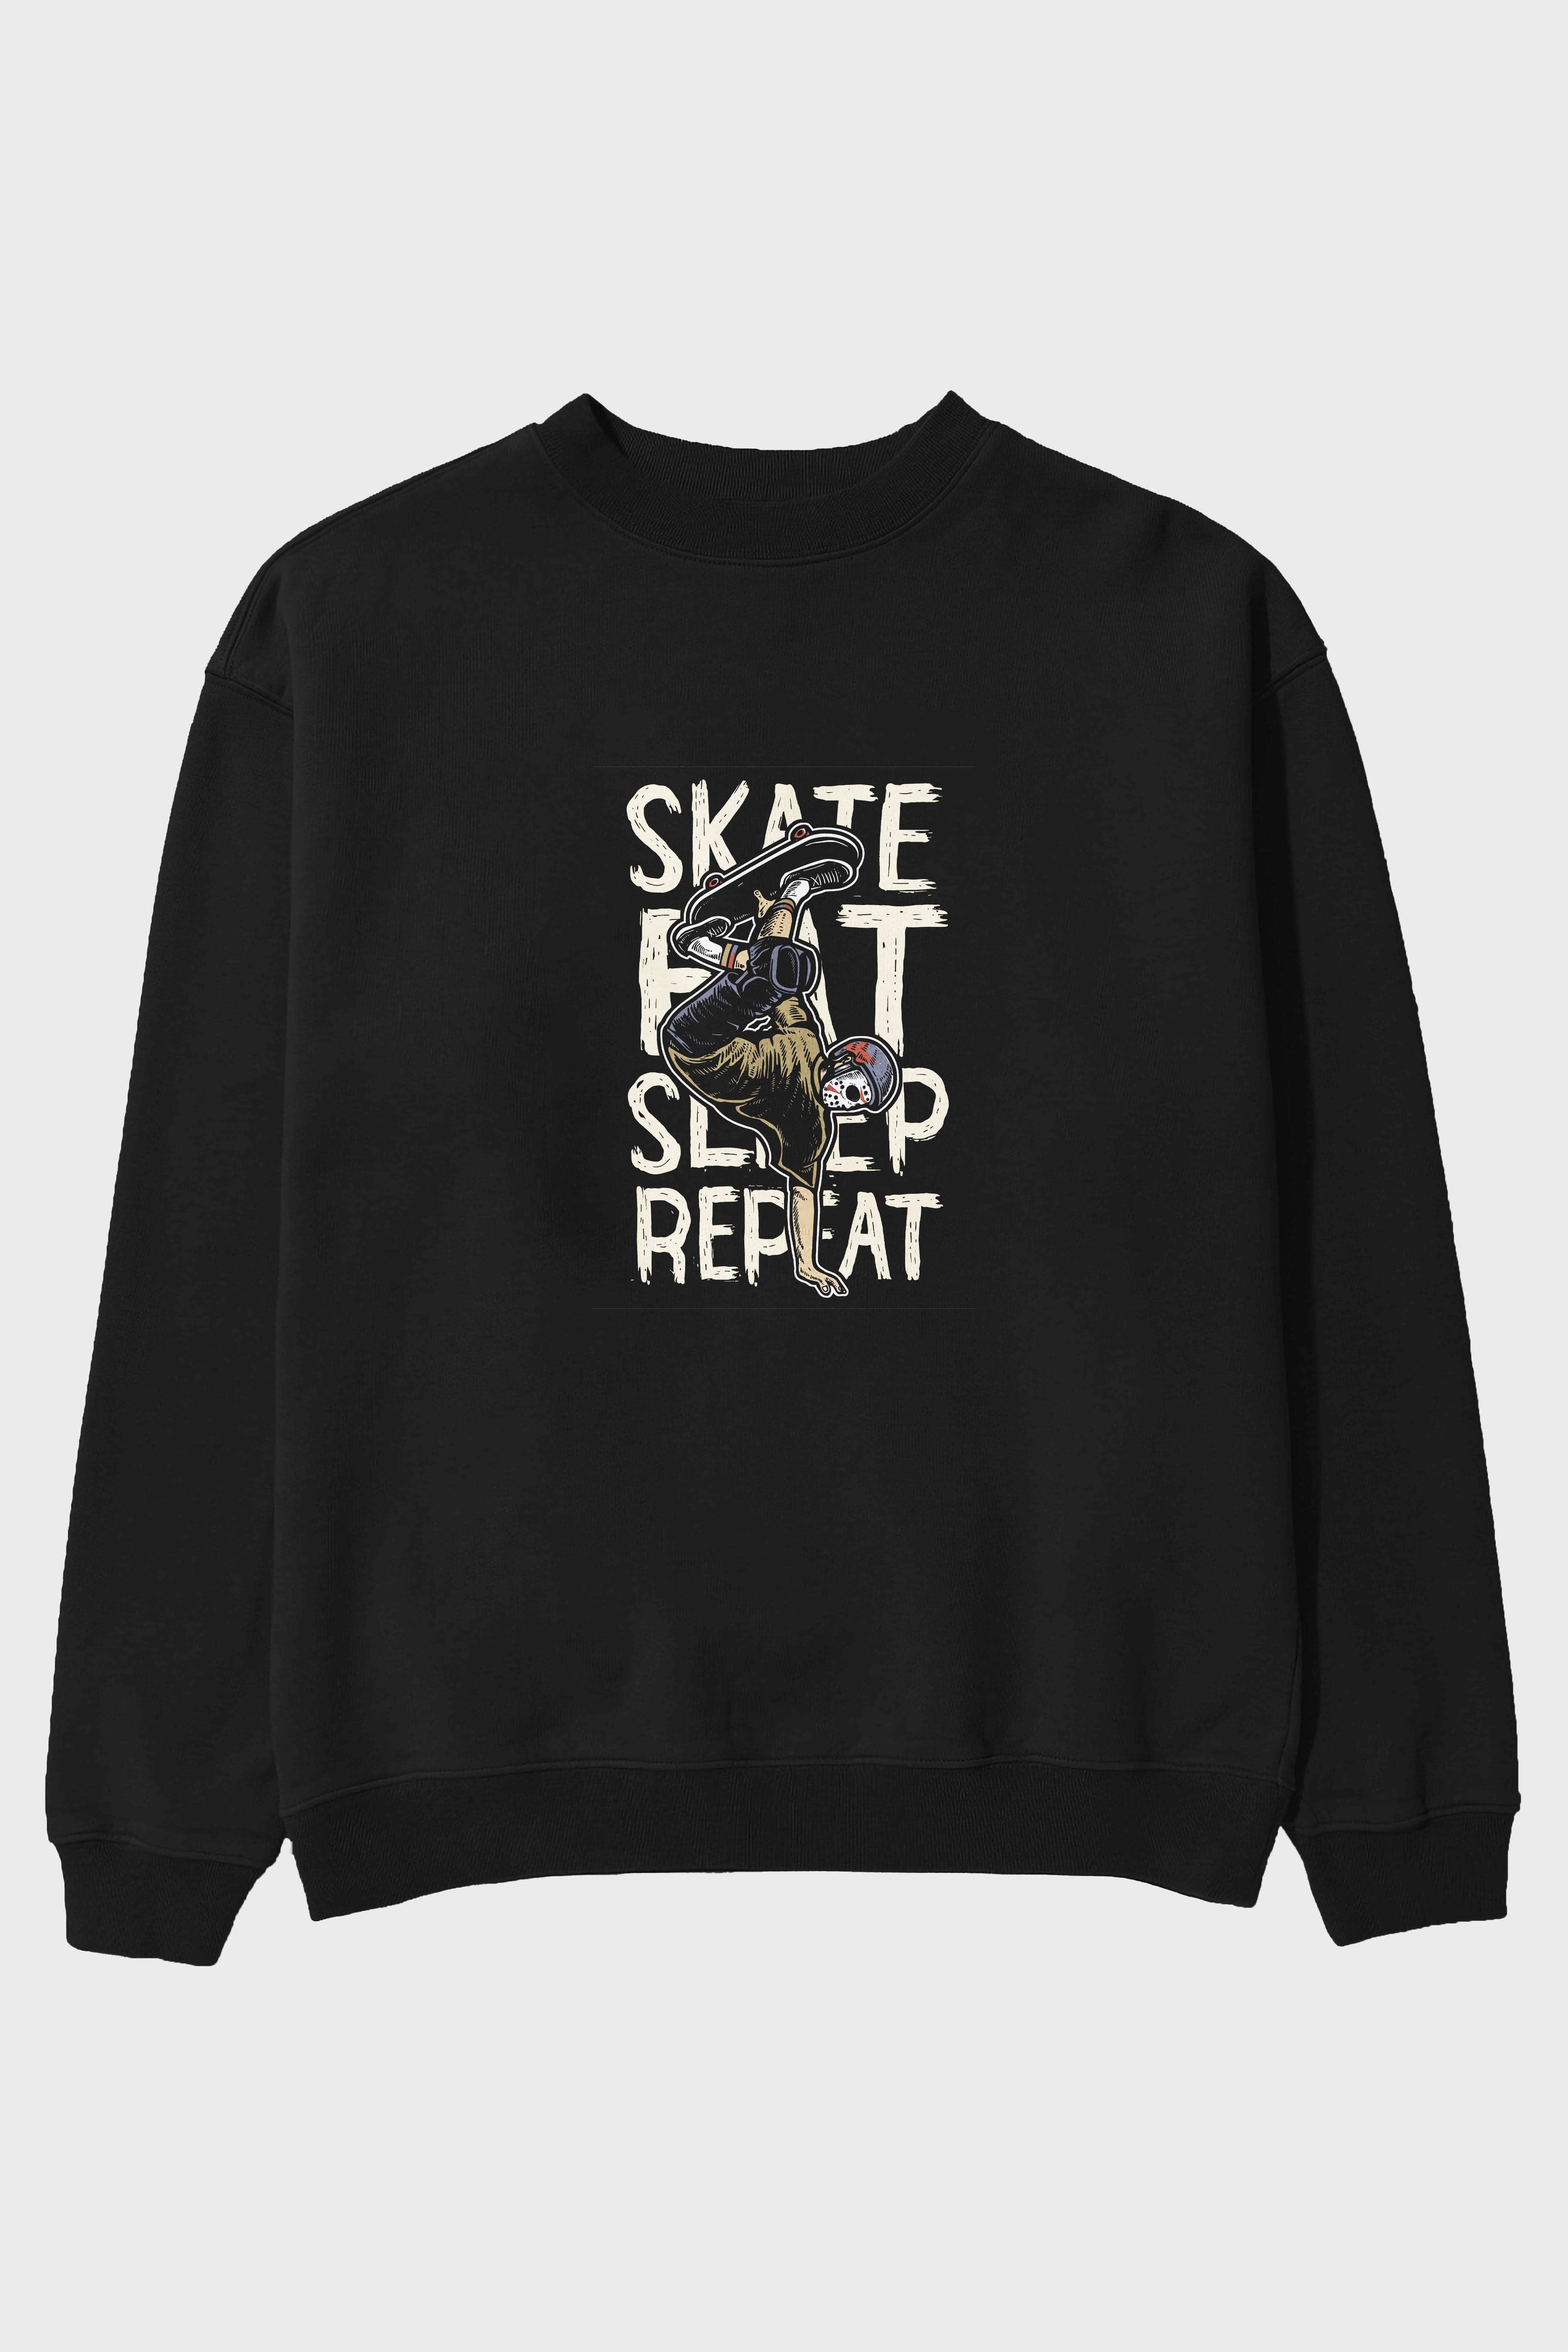 Skate Eat Sleep Repeat Ön Baskılı Oversize Sweatshirt Erkek Kadın Unisex